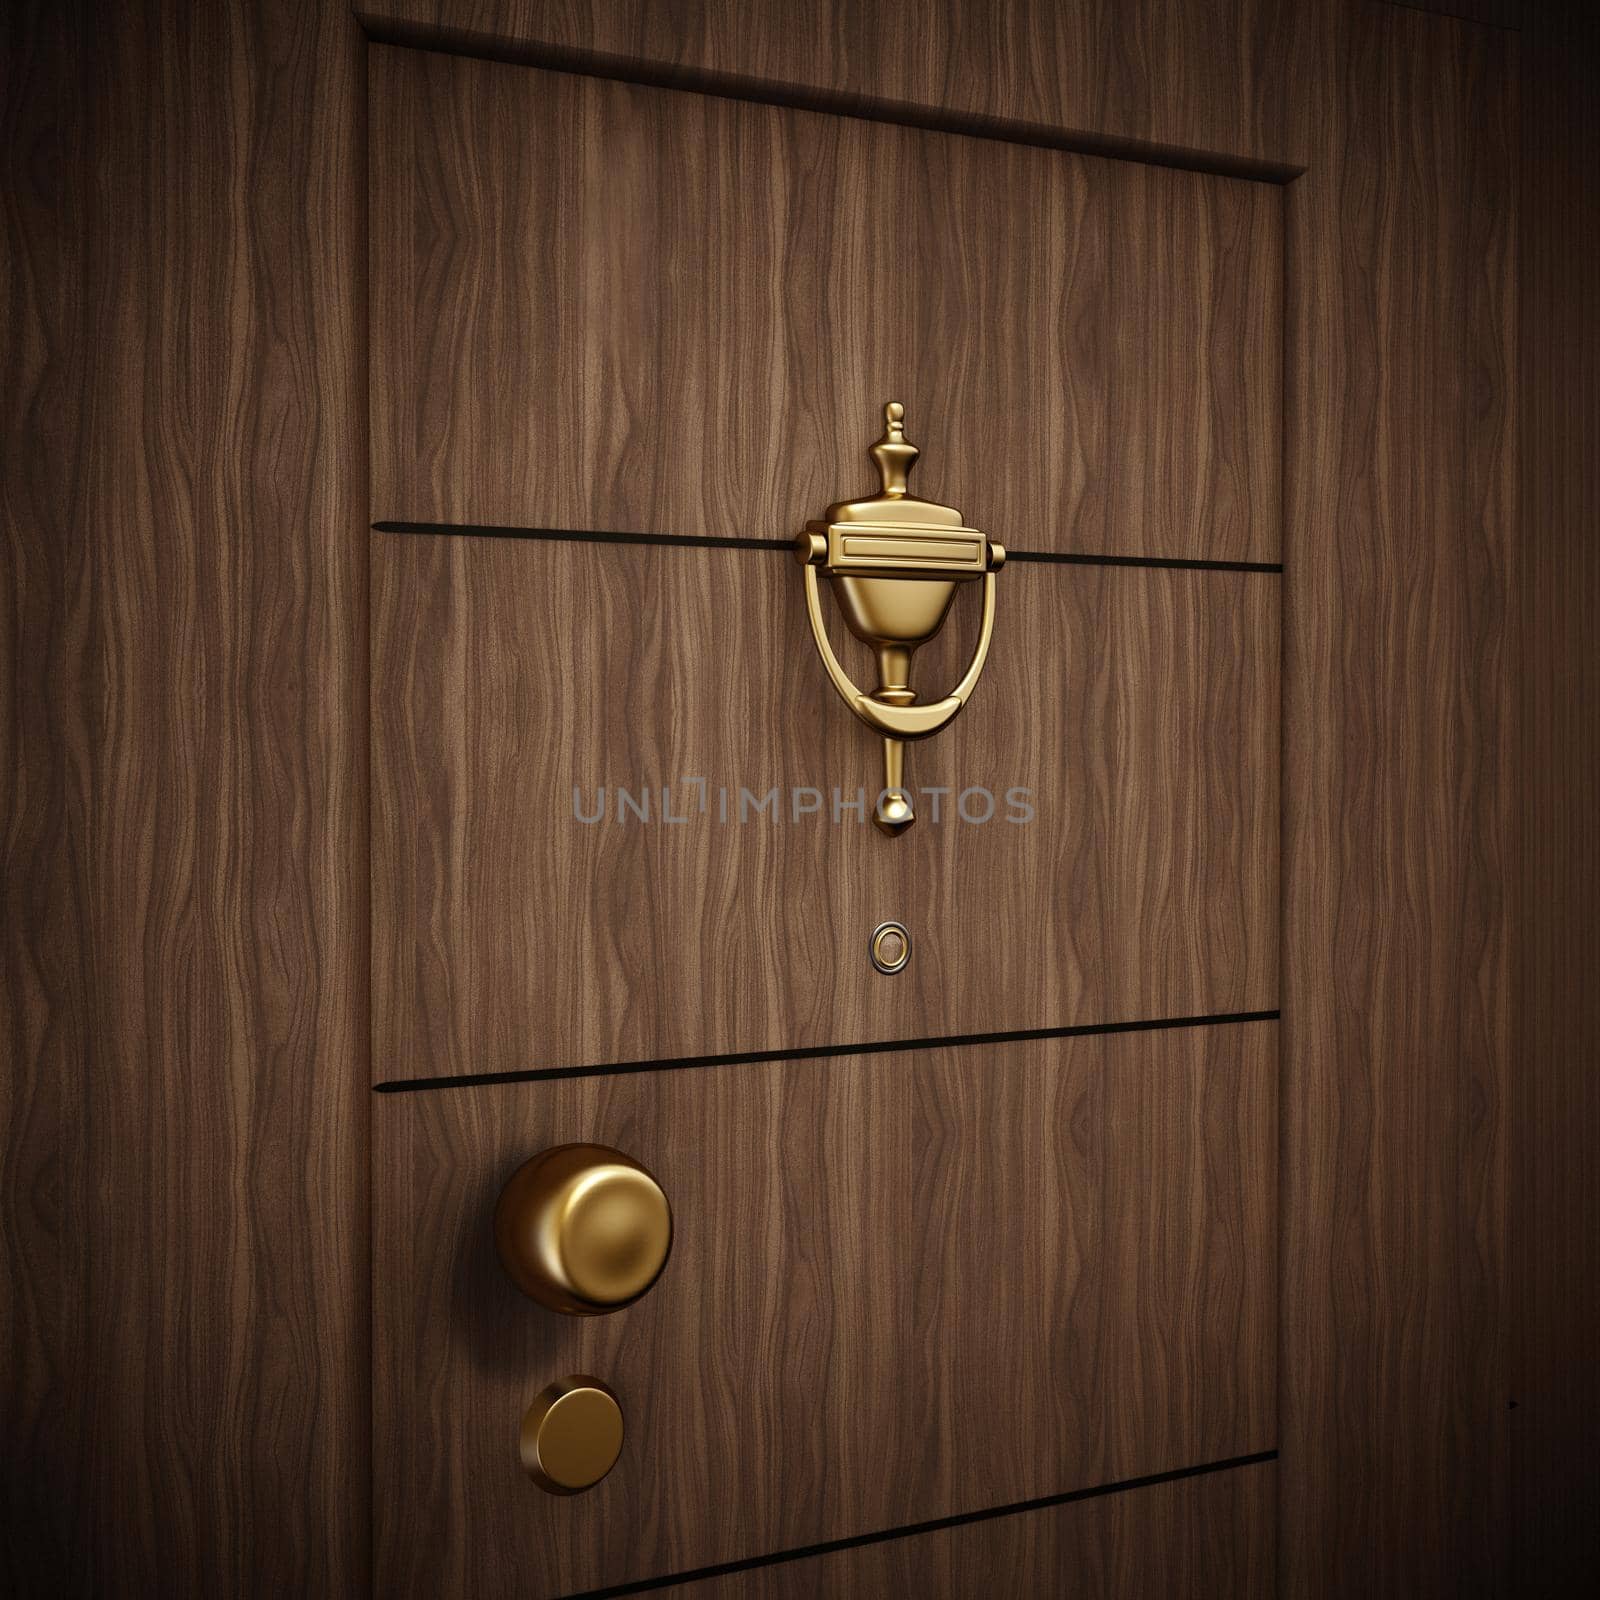 Golden door knocker on wooden door. 3D illustration by Simsek